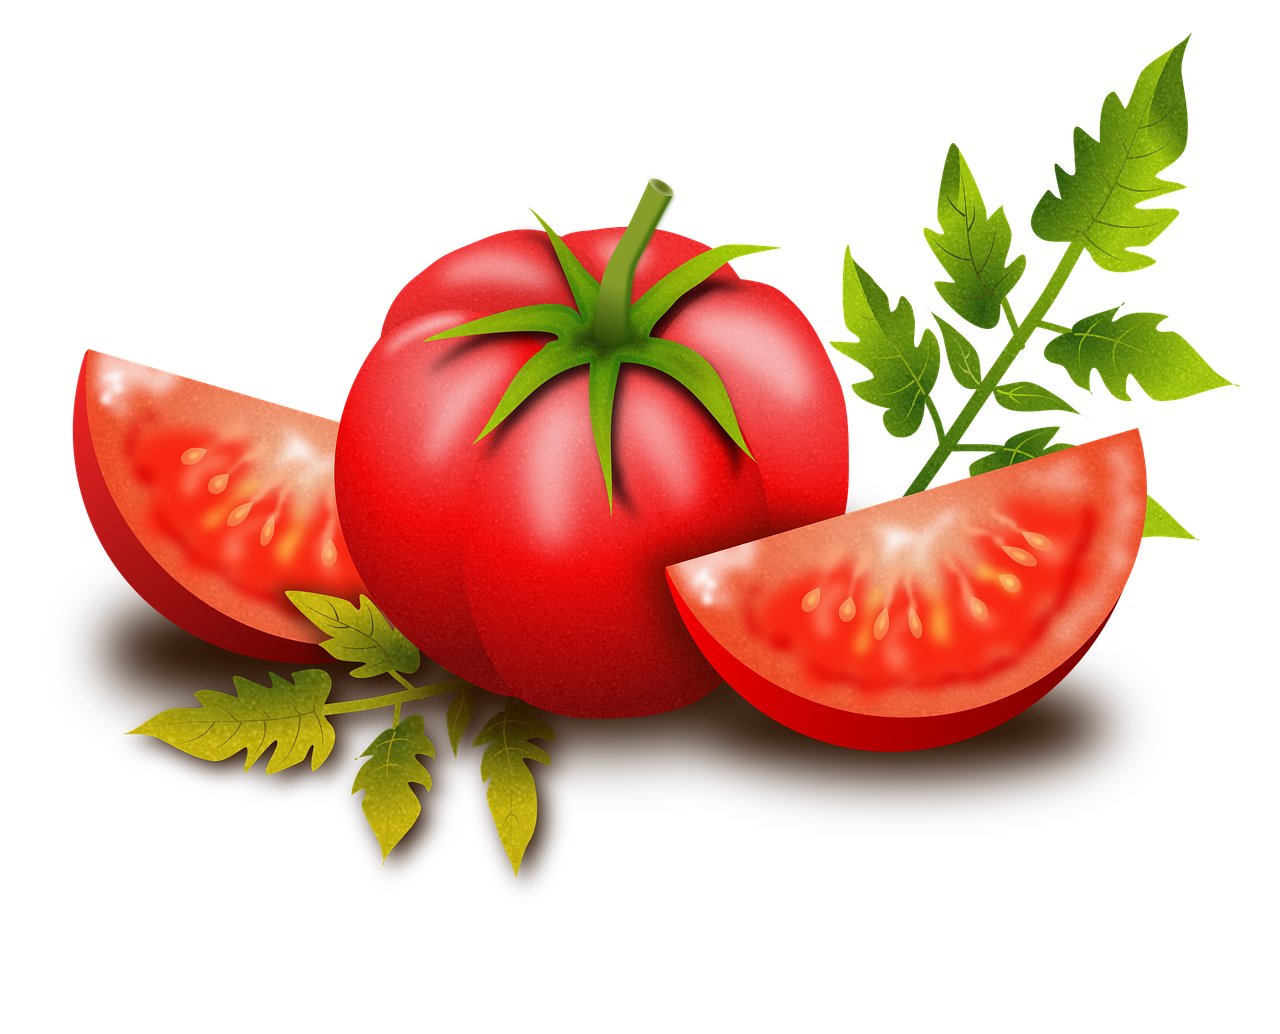 Langer Seva, tomato, fruits, vegetables-2514018.jpg